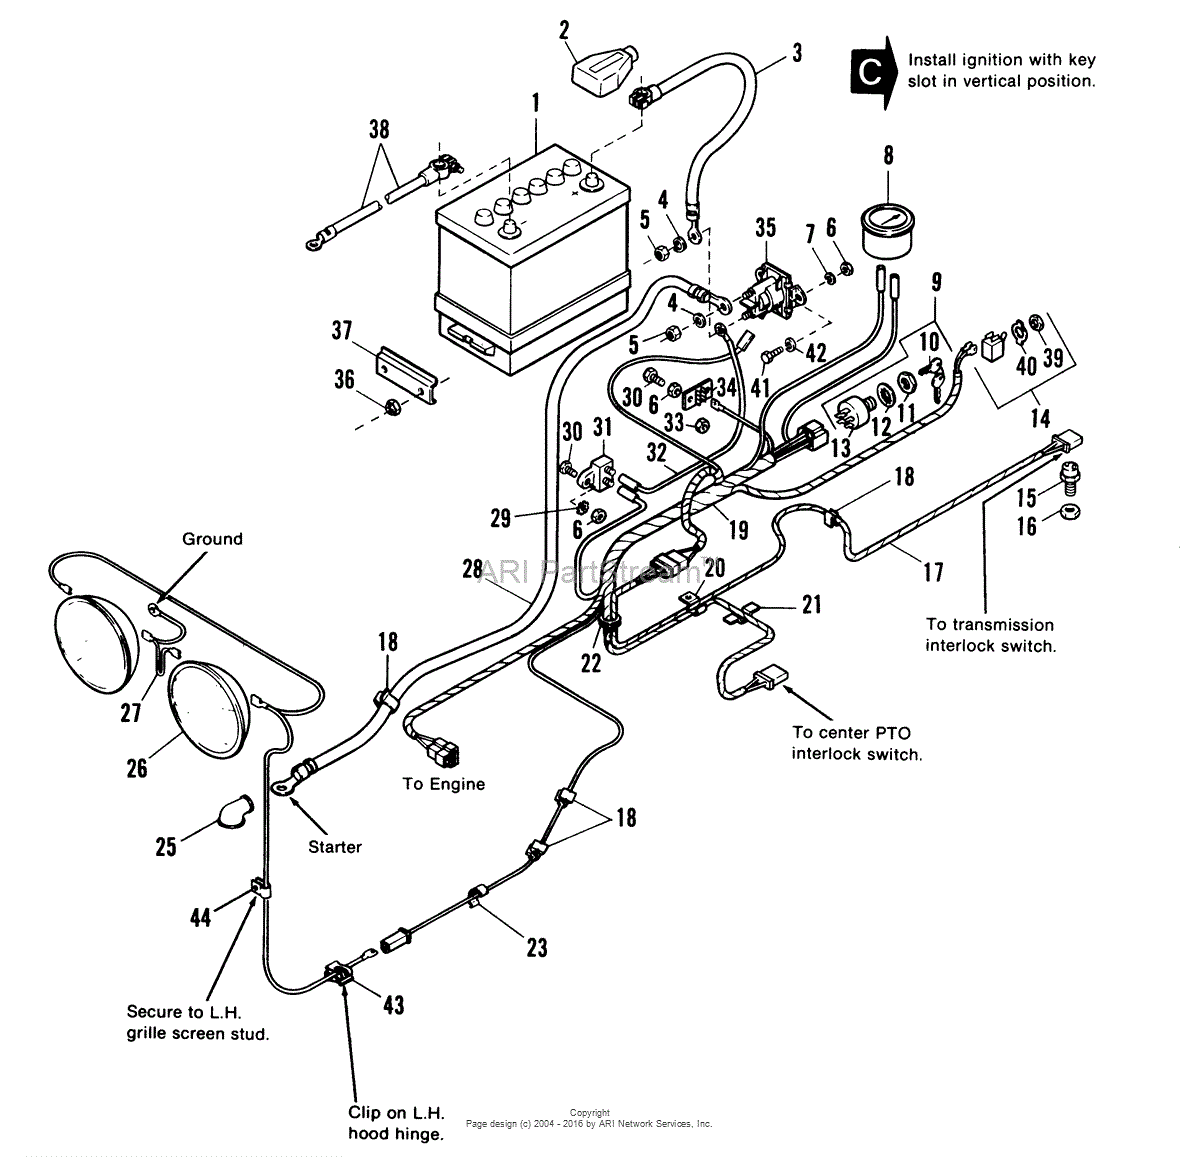 Kubota Zd21 Parts Diagram - General Wiring Diagram